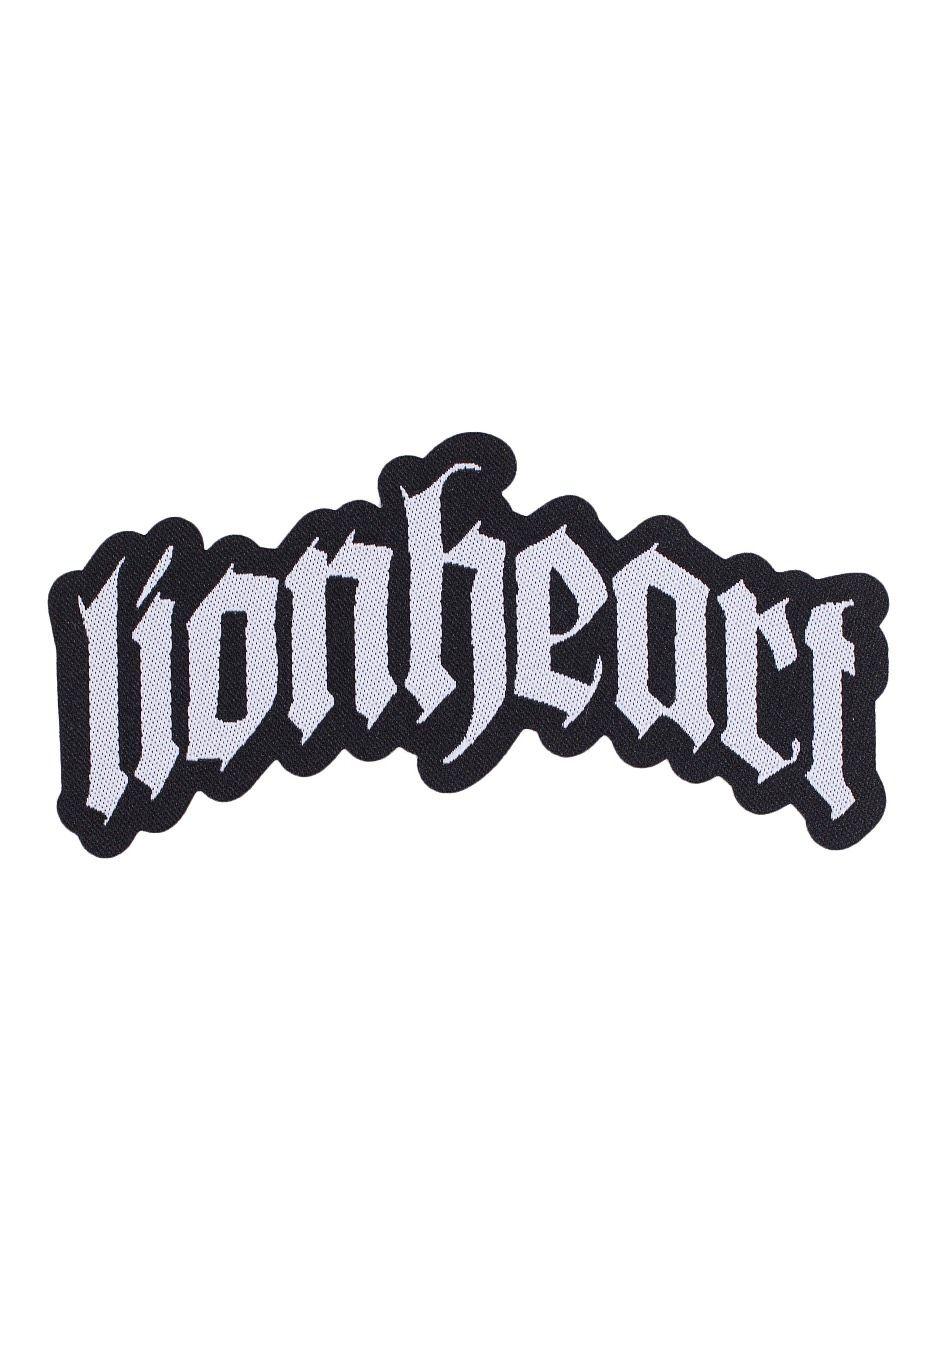 Lionheart Logo - Lionheart - Logo Die Cut - Patch - Official Hardcore Merchandise ...